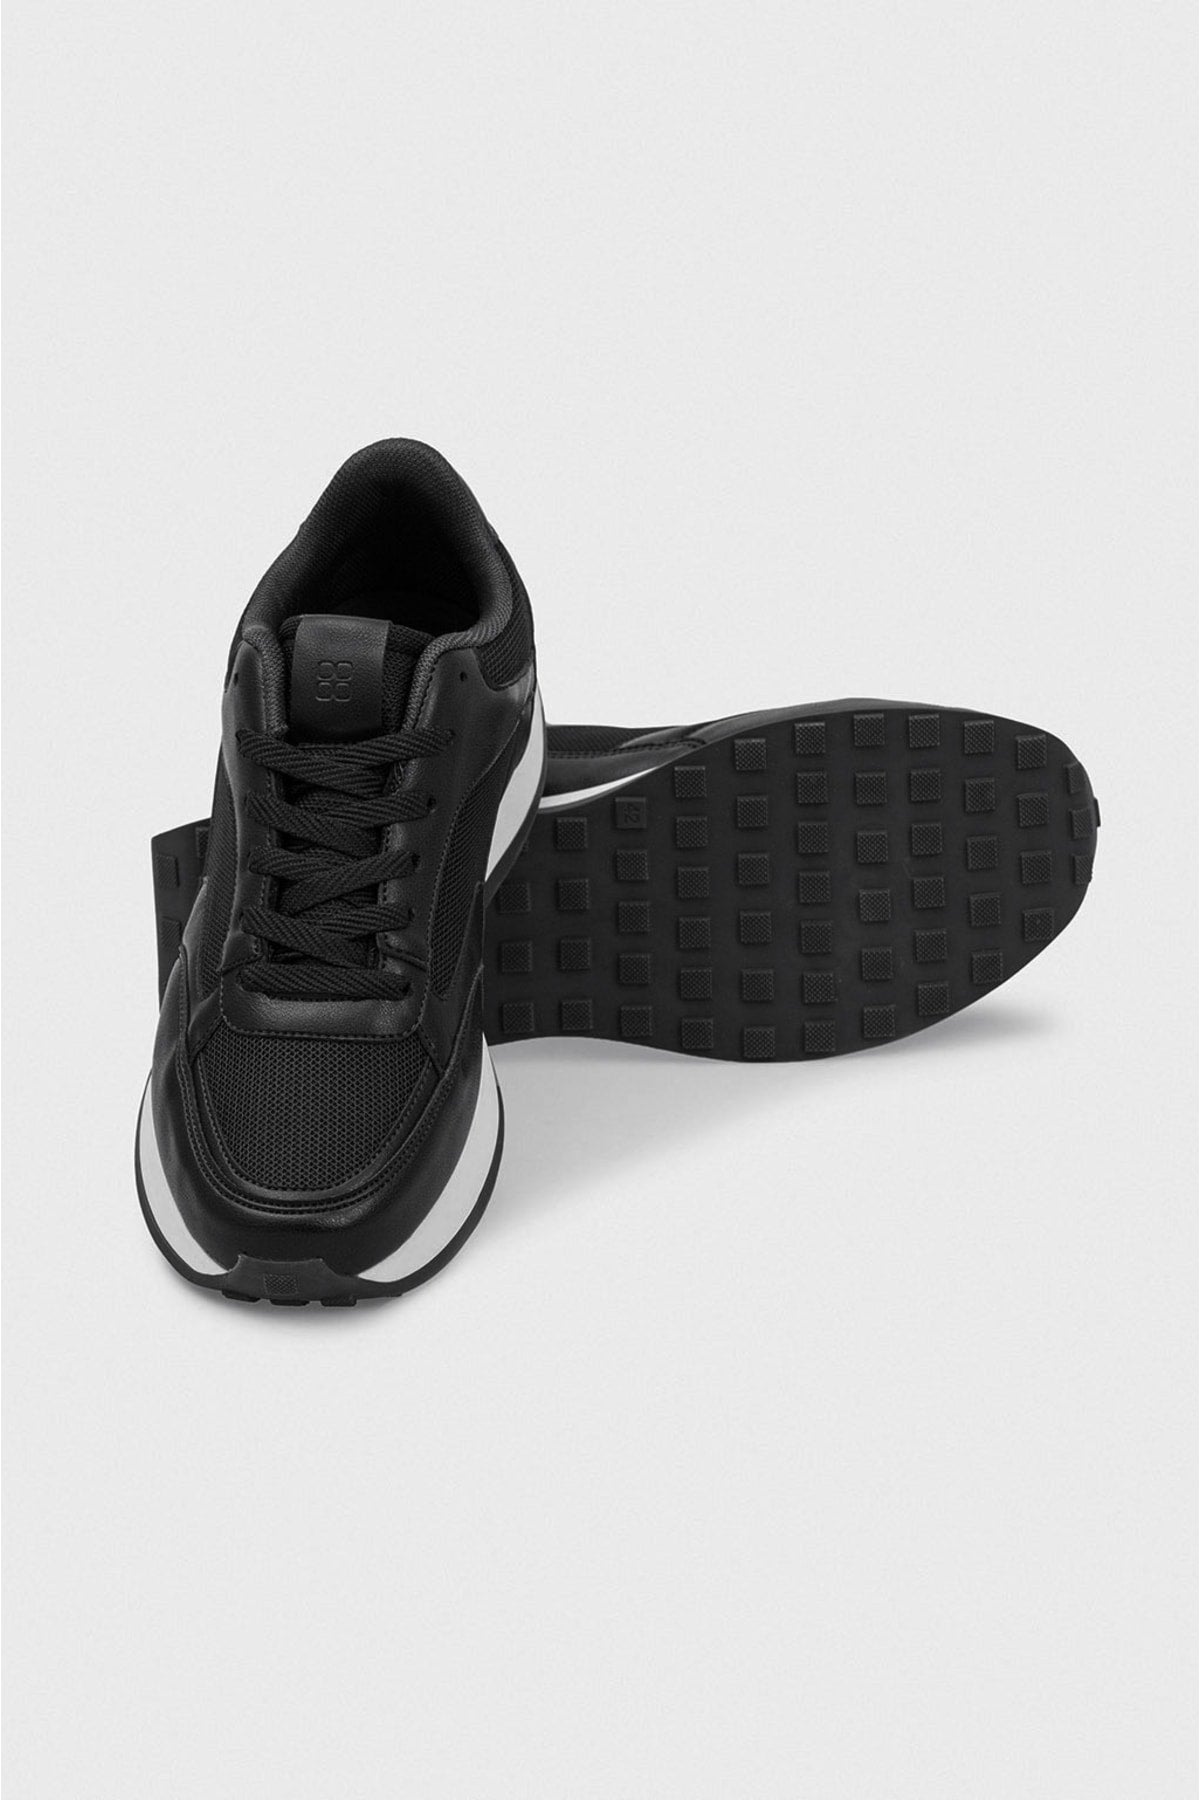 Men's black sneaker shoes A31y8023